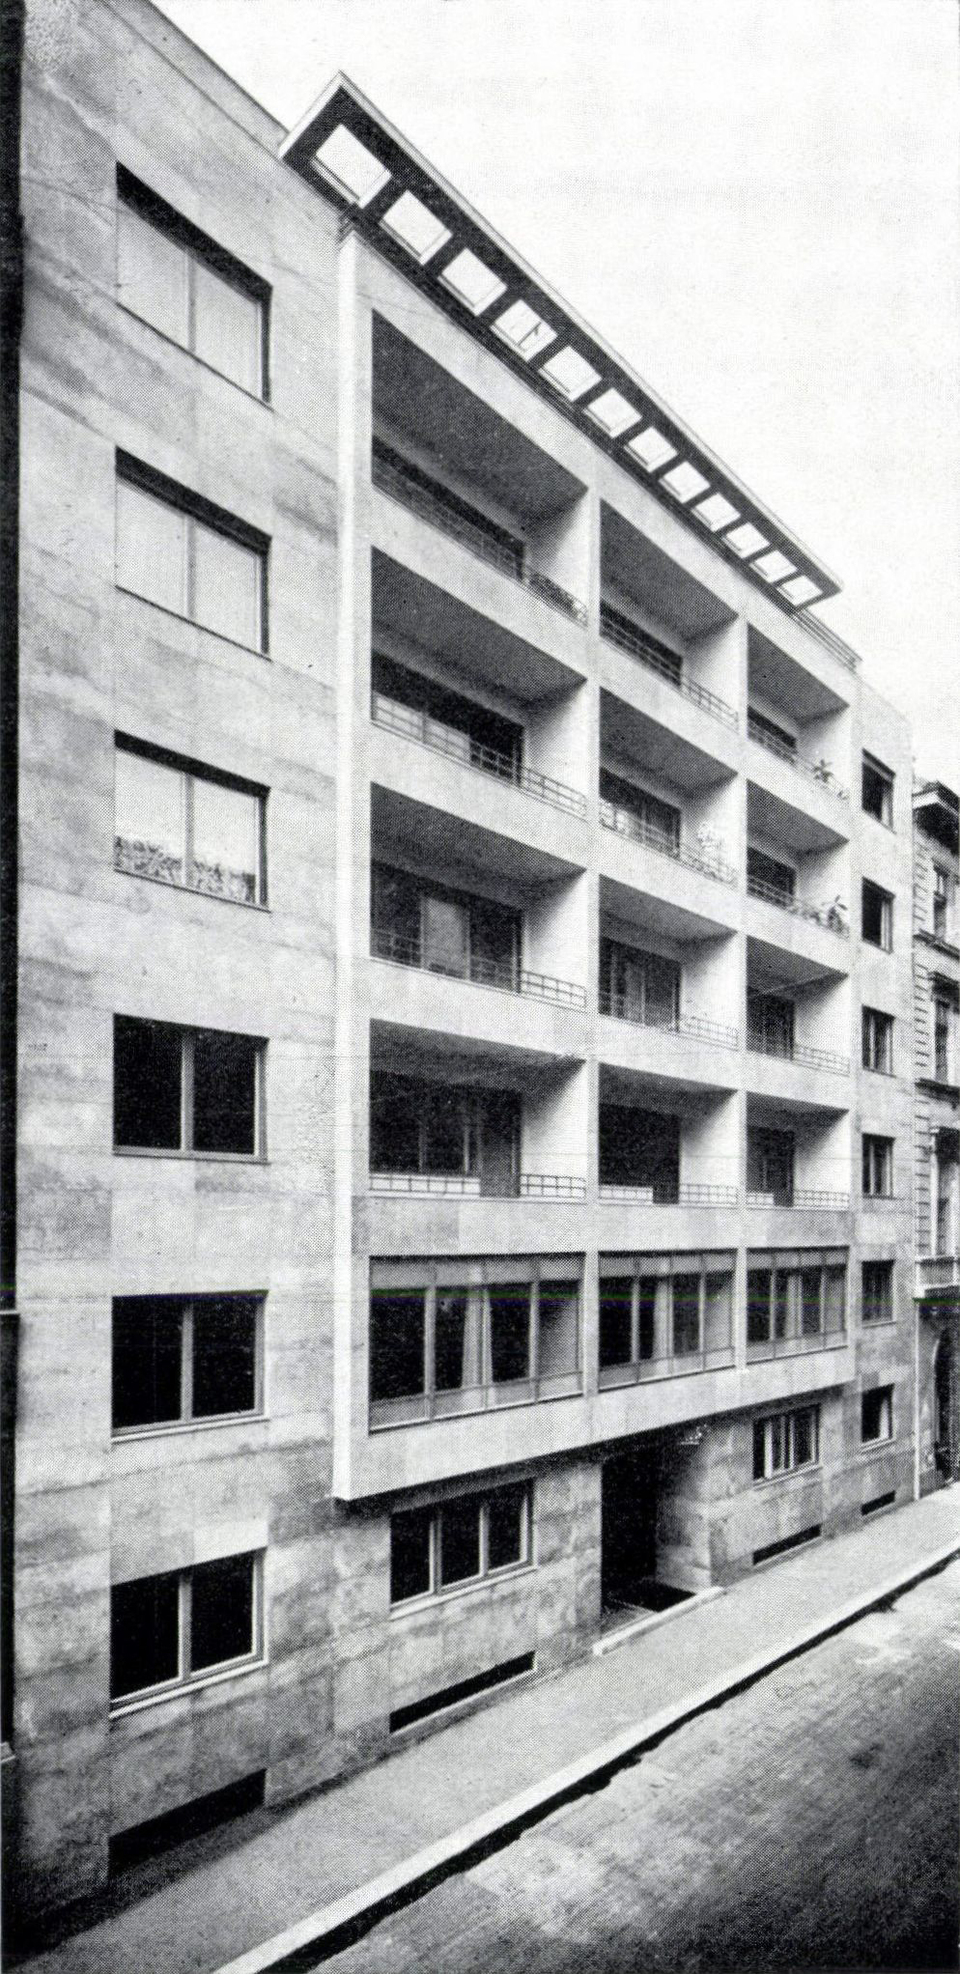 Budapest, Szép utca 3., 1937-ben, tervező: Lauber László és Nyiri István (Tér és Forma, 1937/10., 288. o.)